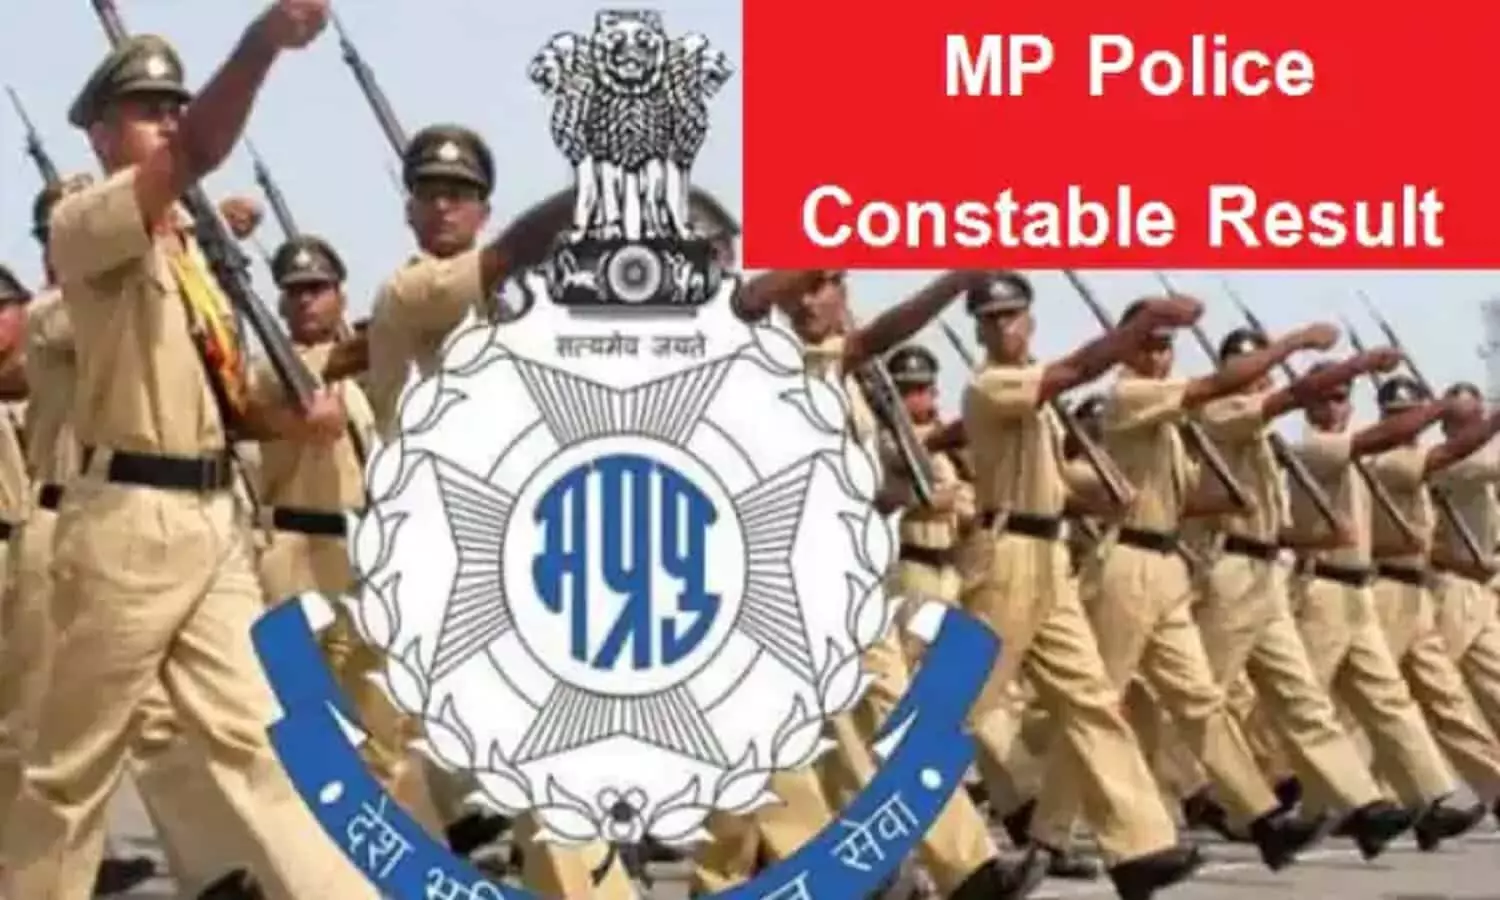 MP Police Constable Result 2022: एमपी पुलिस कांस्टेबल रिजल्ट peb.mp.gov.in पर हुआ जारी, इस Direct Link पर जाकर जानें परिणाम